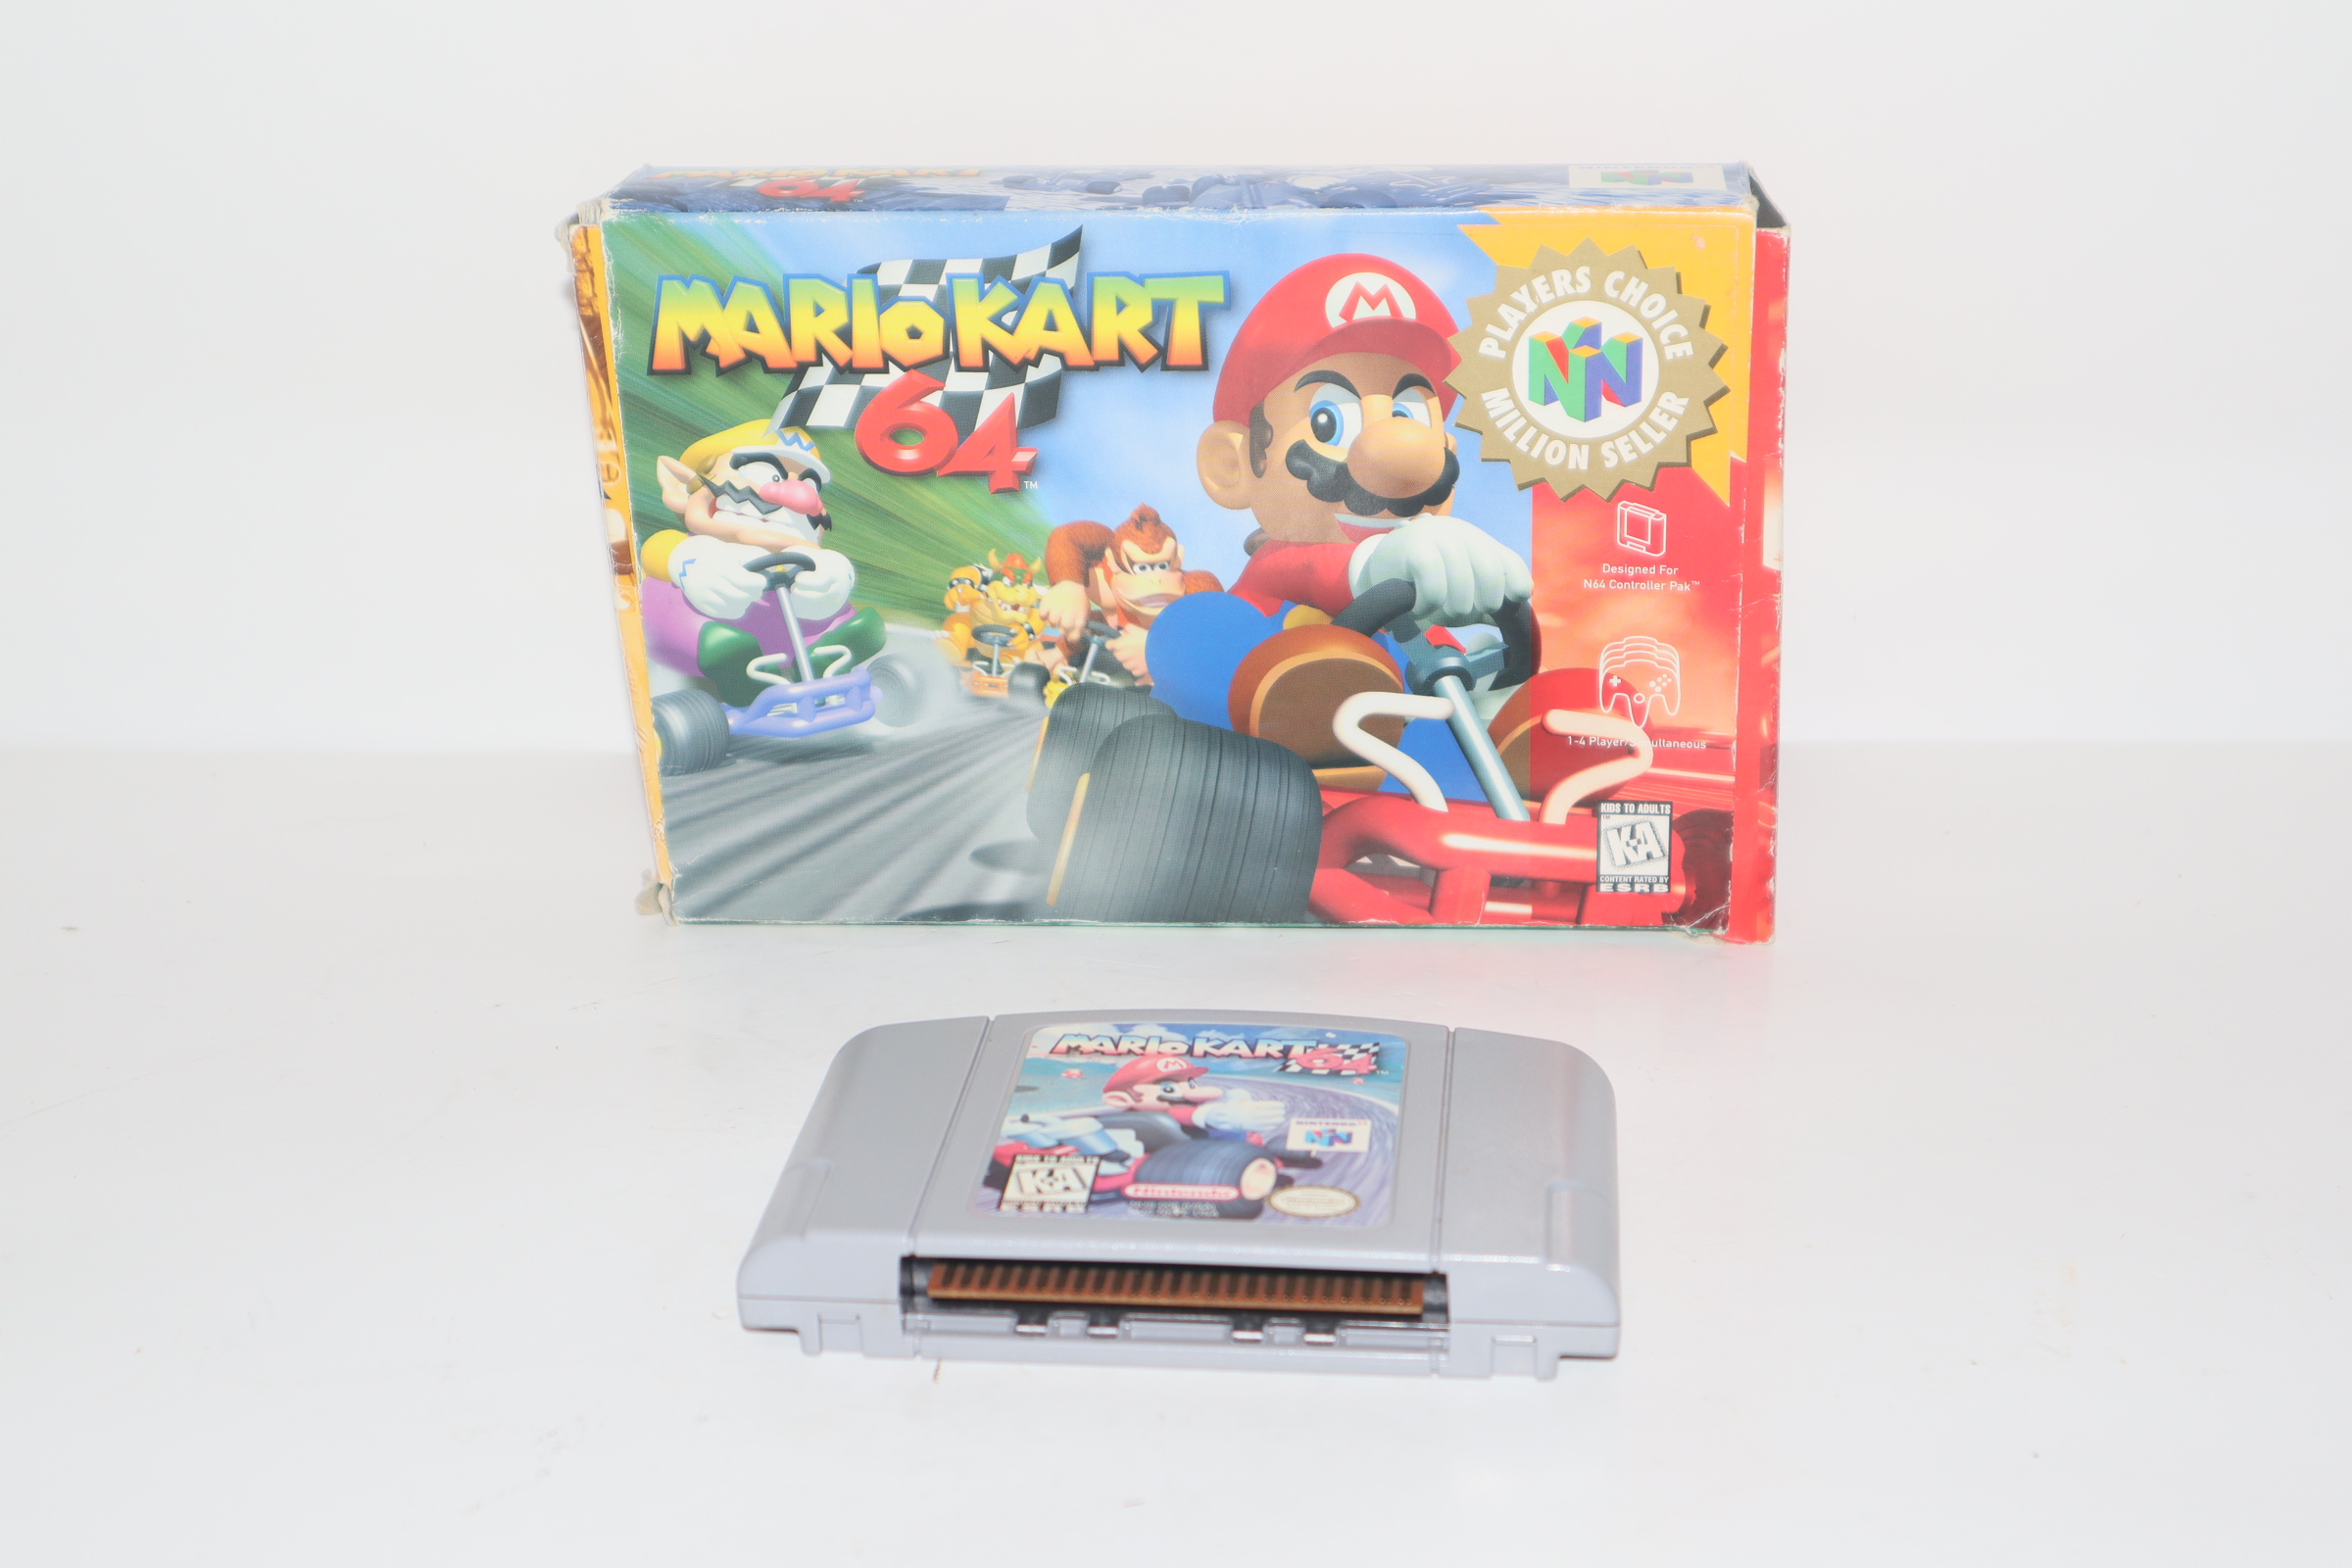 ▷ Play Mario Kart 64 Online FREE - N64 (Nintendo 64)